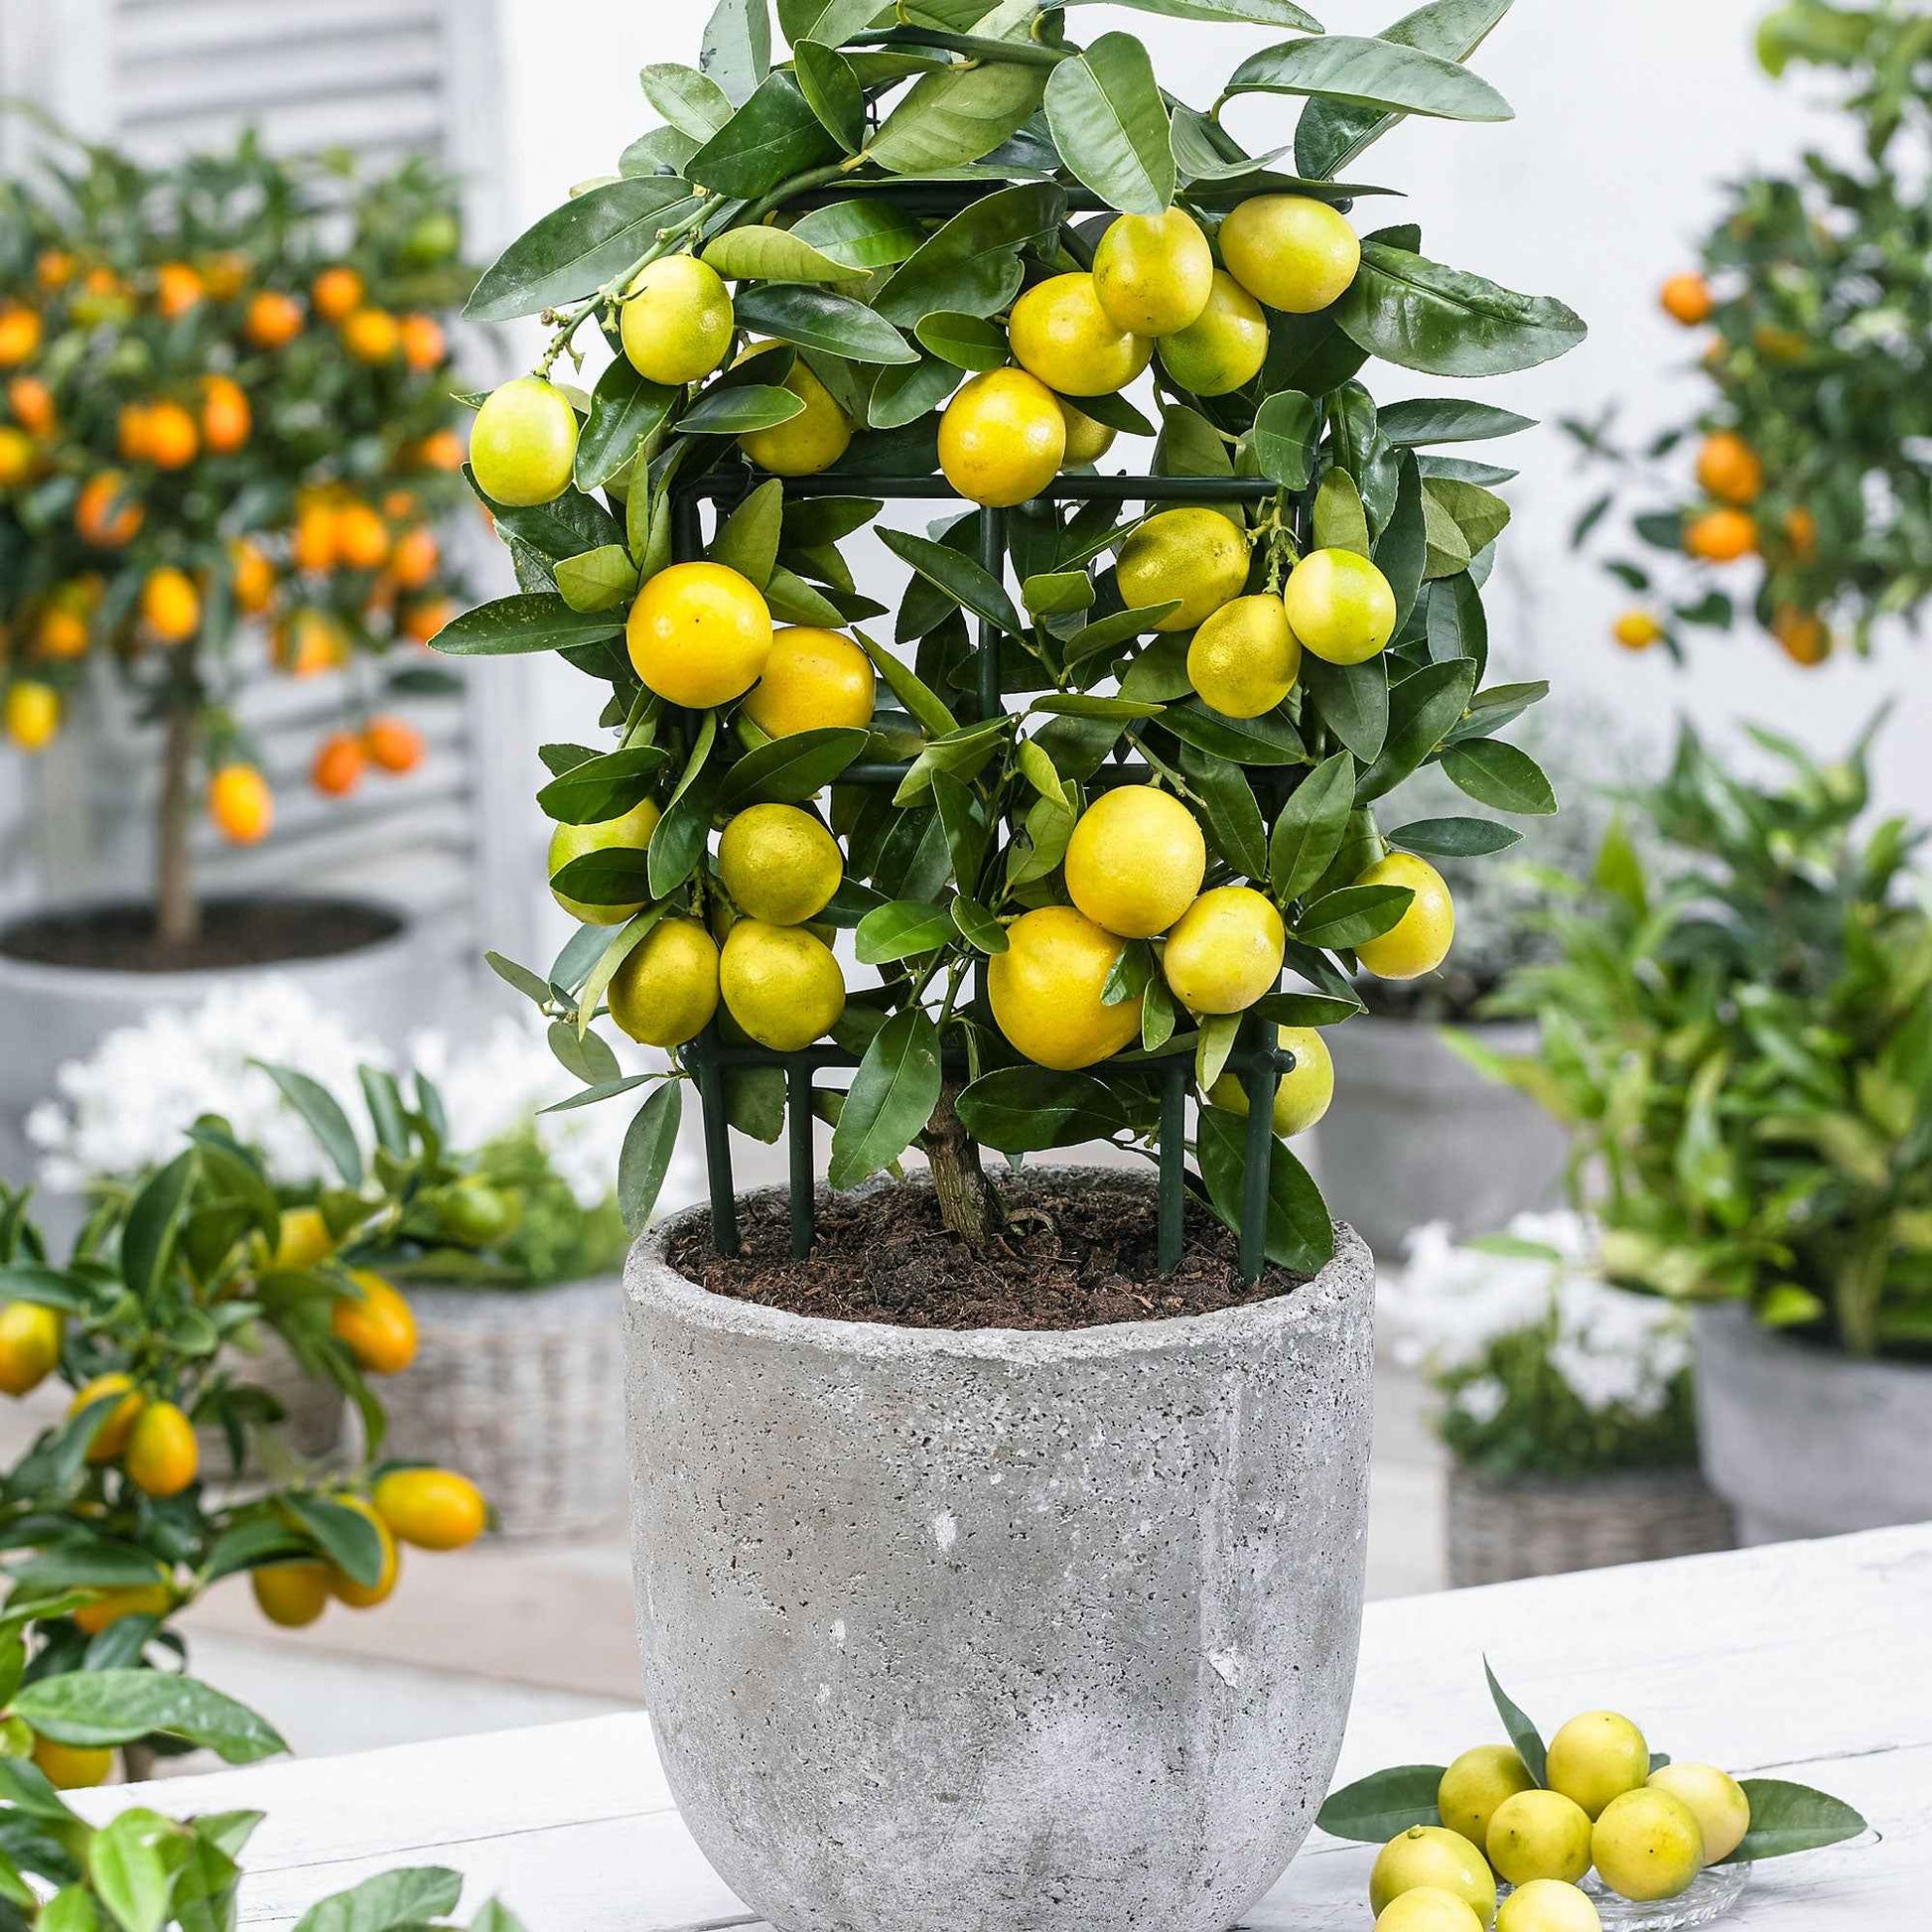 Limequatbaum Citrus x floridana auf einem Stamm - andere Früchte